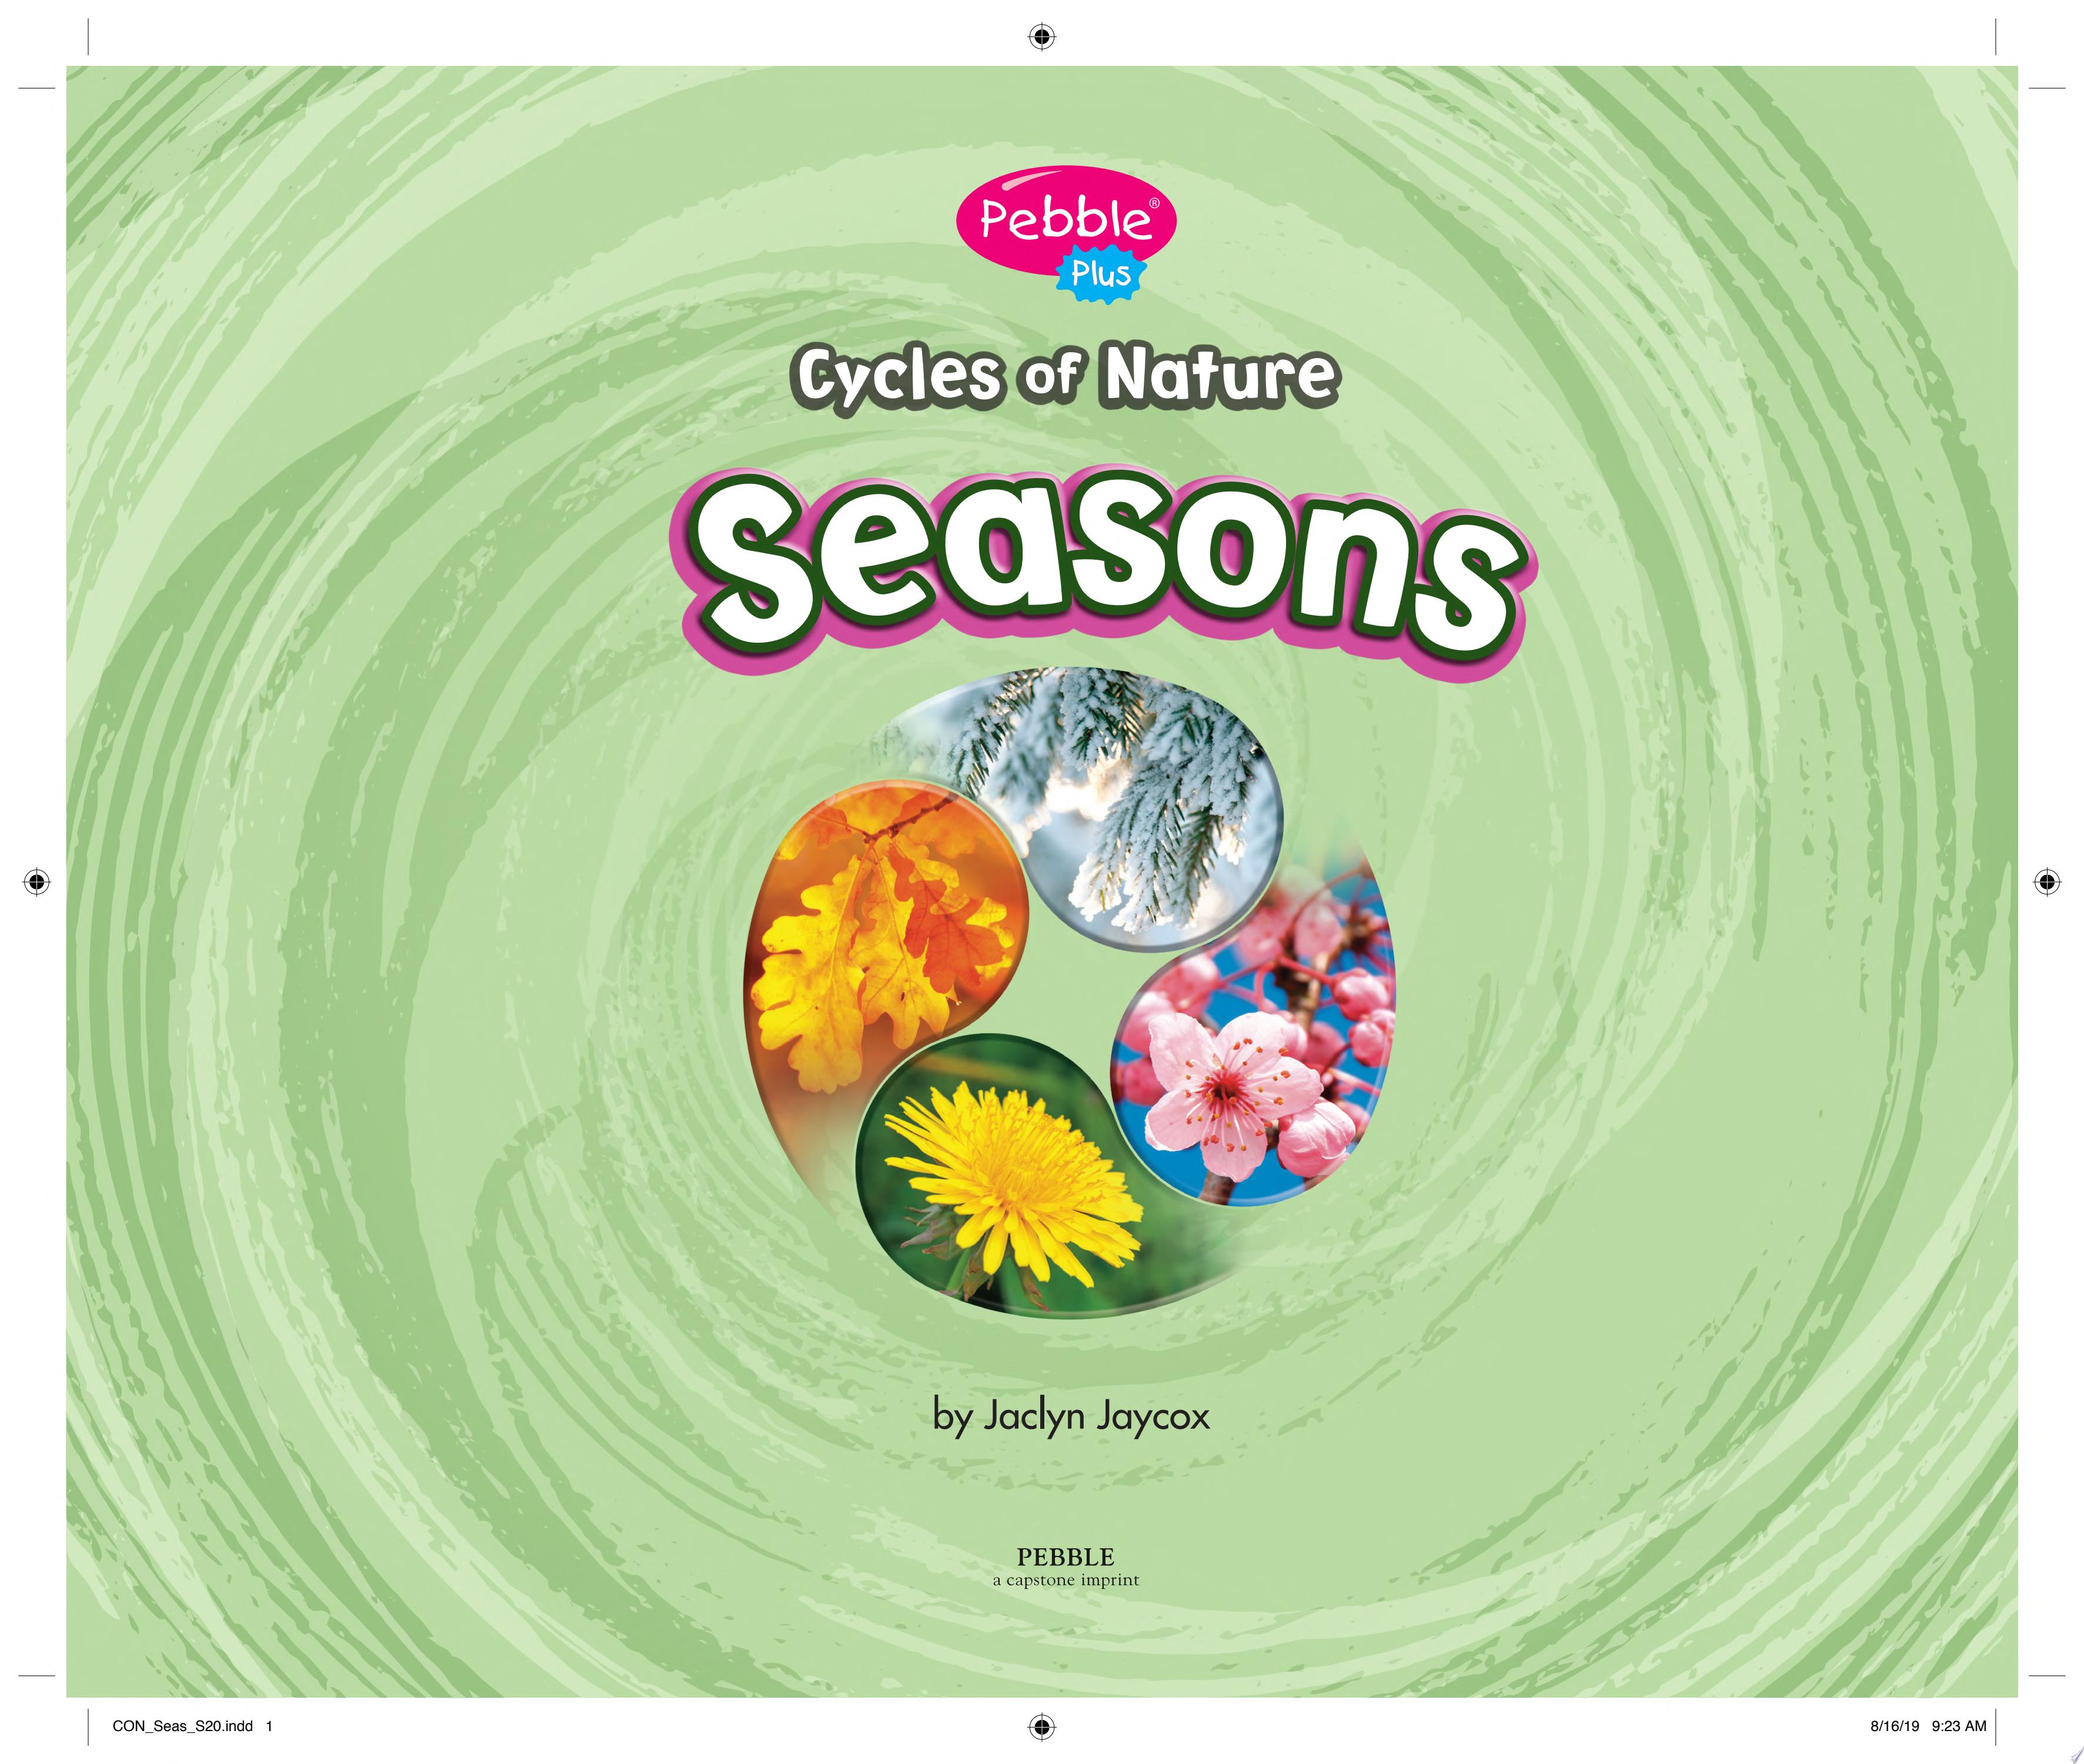 Image for "Seasons"